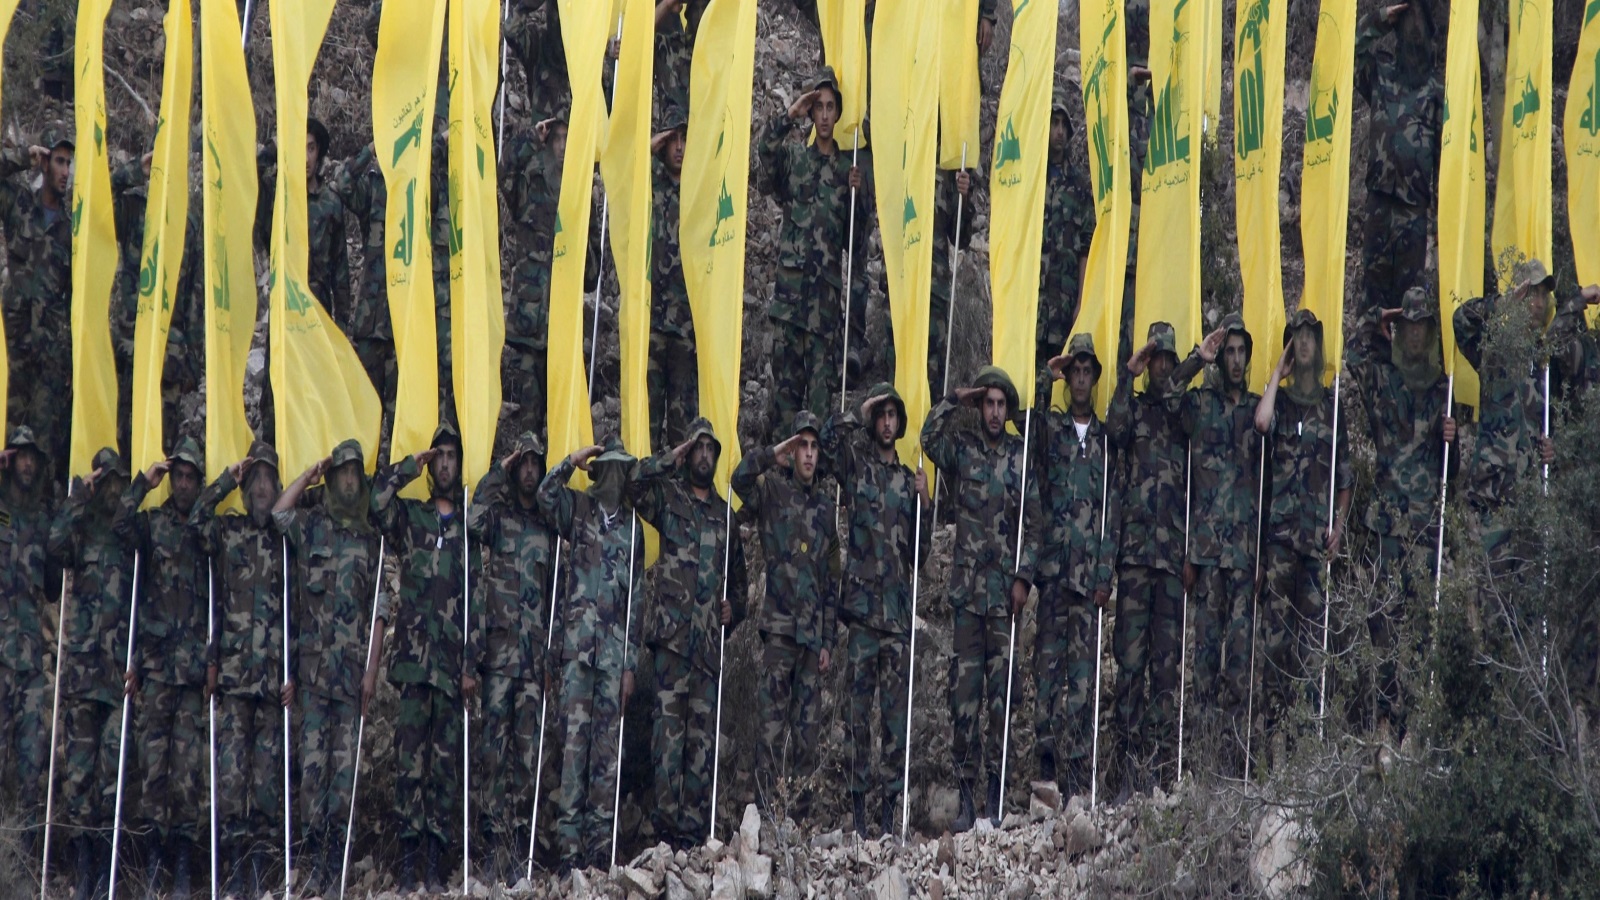 يمكن القول إن حزب الله نجح في التحول إلى فكرة بالفعل، ولكن ليس كفكرة للمقاومة ومواجهة الاحتلال الإسرائيلي، بل كفكرة لكيانات عسكرية سياسية إيرانية متوسعة في المنطقة